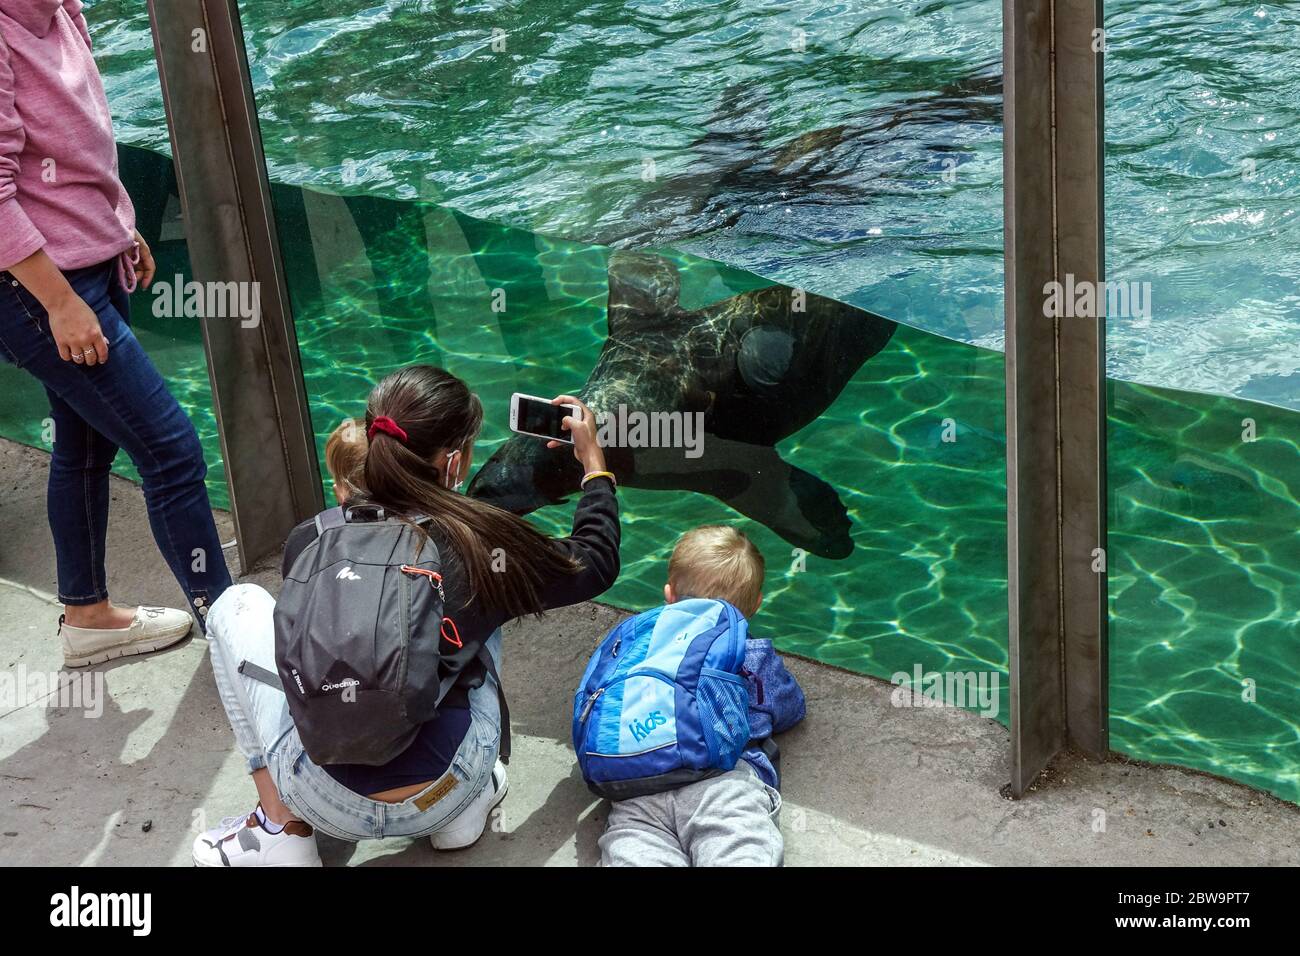 Les gens, les visiteurs, regardez les lions de mer dans le zoo de Prague, un bon événement pour une excursion d'une journée pour la famille avec les enfants animaux de zoo personnes Banque D'Images